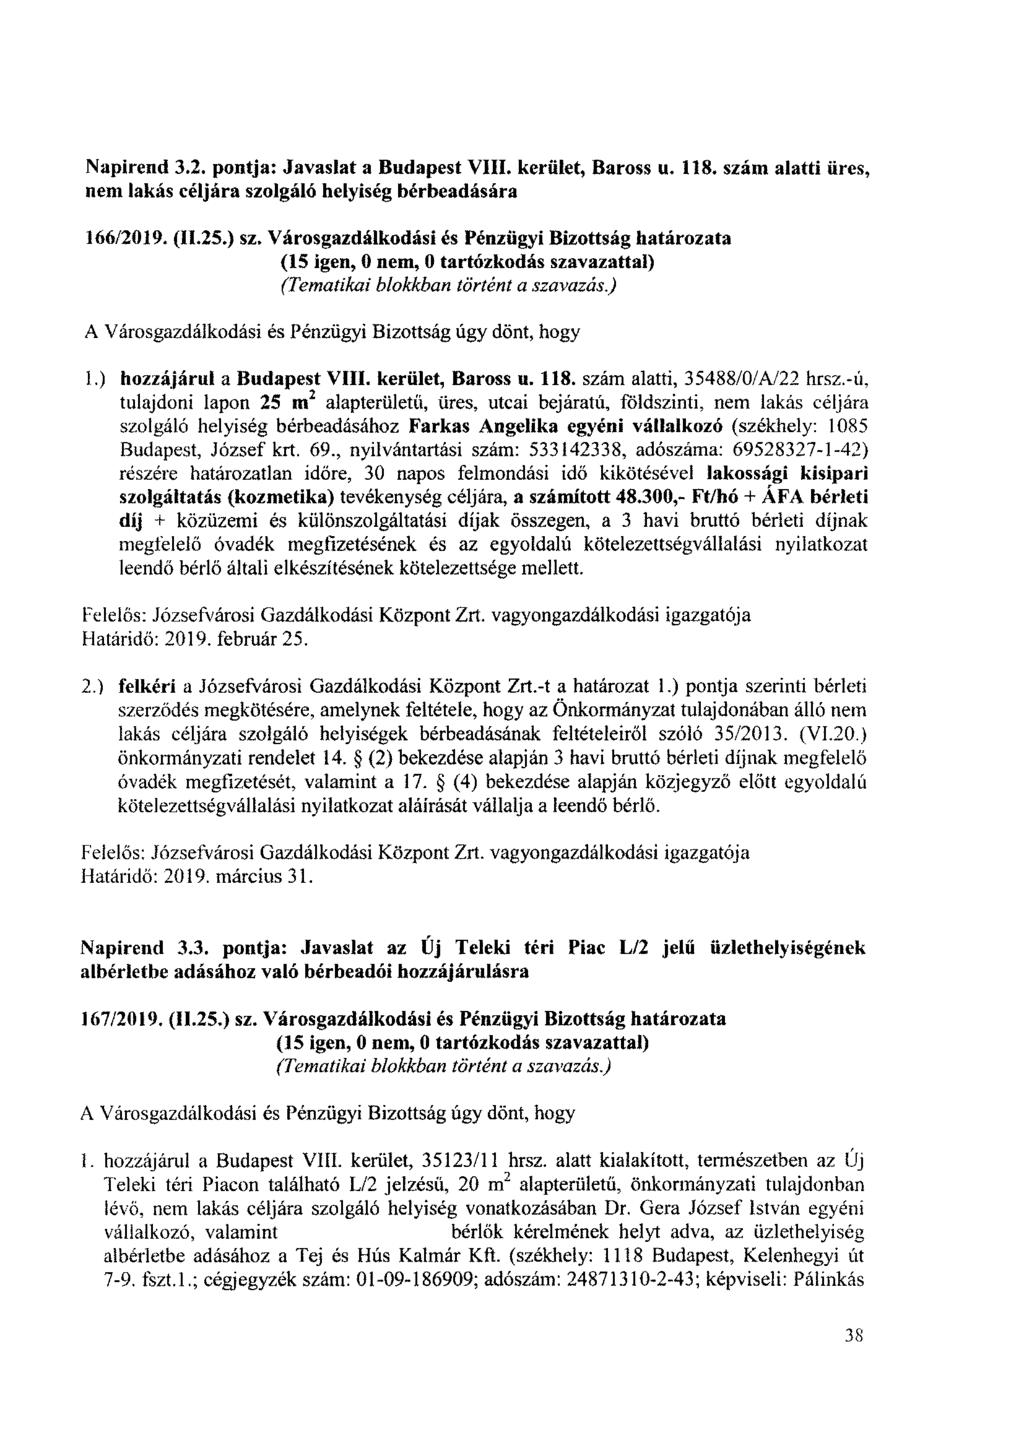 Napirend 3.2. pontja: Javaslat a Budapest VIII. kerület, Baross u. 118. szám alatti üres, nem lakás céljára szolgáló helyiség bérbeadására 166/2019. (11.25.) sz.